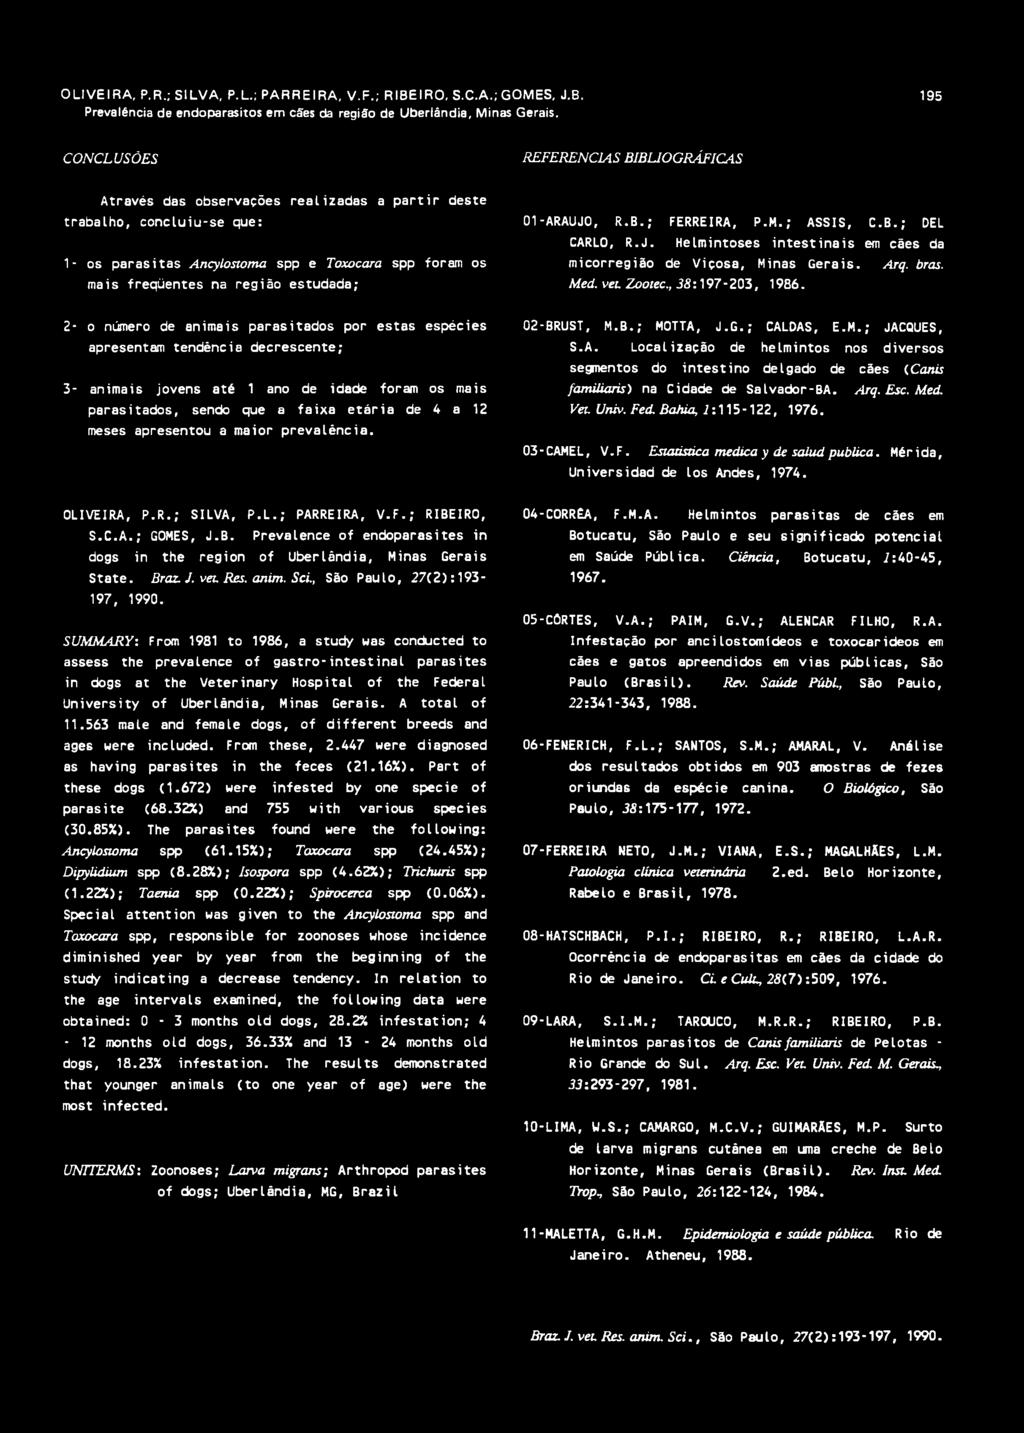 região estudada; 01-ARAUJO, R.B.; FERREIRA, P.M.; ASSIS, C.B.; DEL CARLO, R.J. Helmintoses intestinais em cães da micorregião de Viçosa, Minas Gerais. Arq. bras. Med. vet Zootec., 38:197-203, 1986.